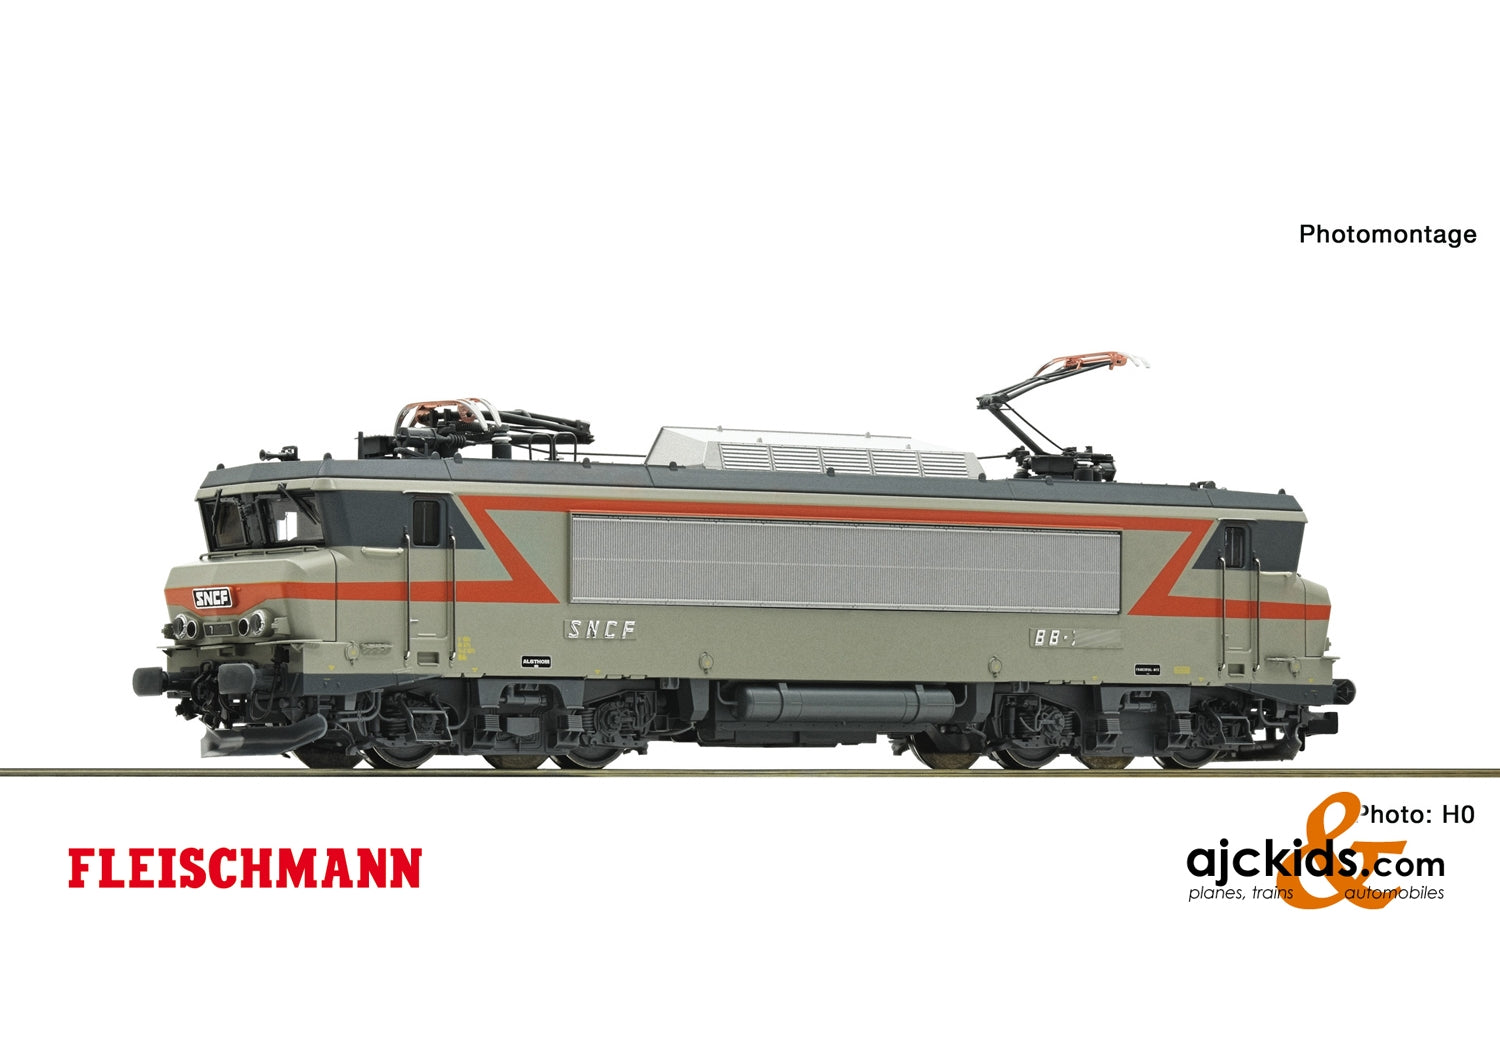 Fleischmann 732135 - Electric locomotive BB 7200